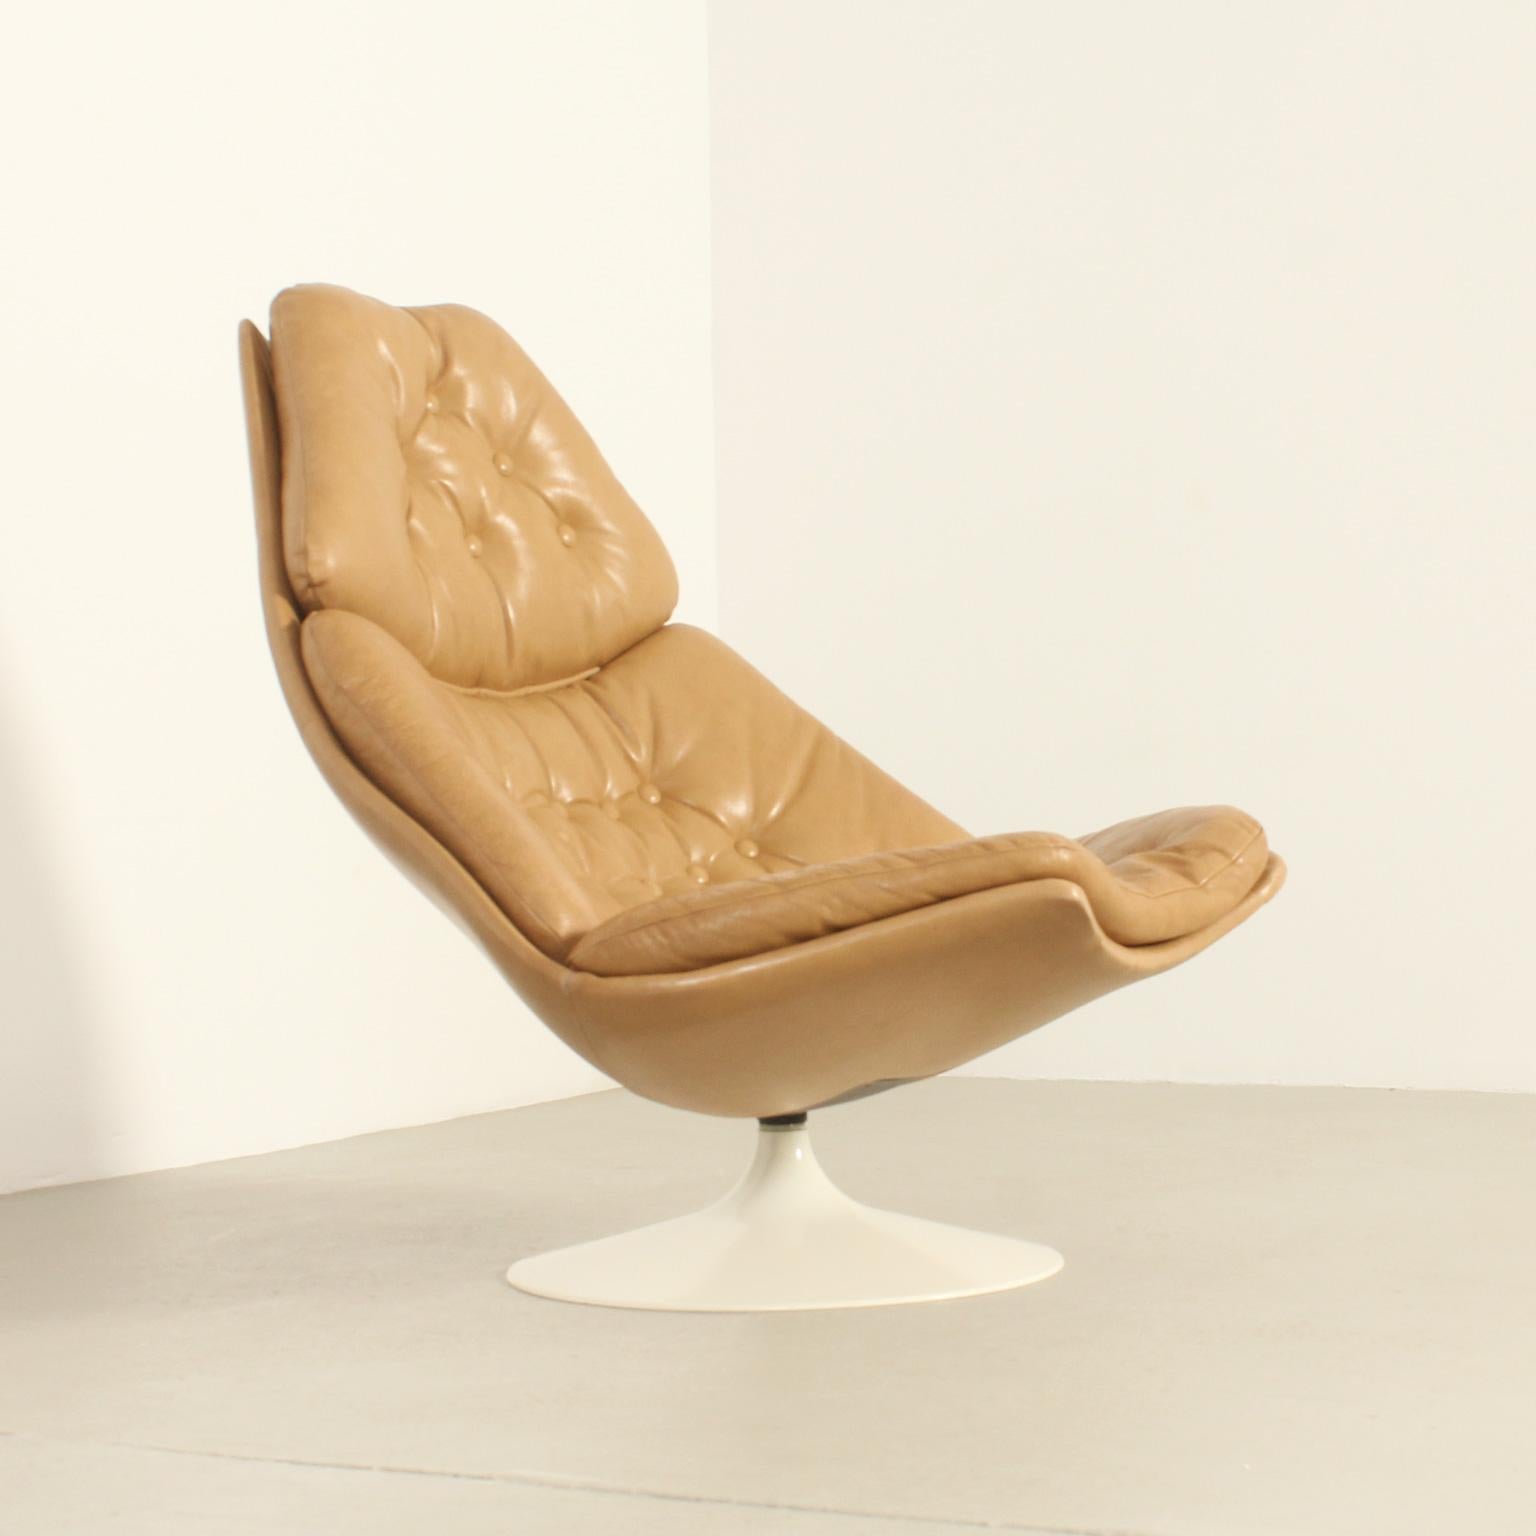 Chaise longue modèle FS588 conçue en 1967 par le designer britannique Geoffrey Harcourt pour Artifort, Pays-Bas. Première édition en cuir fauve classique et base pivotante en fibre de verre. Un design classique très confortable.